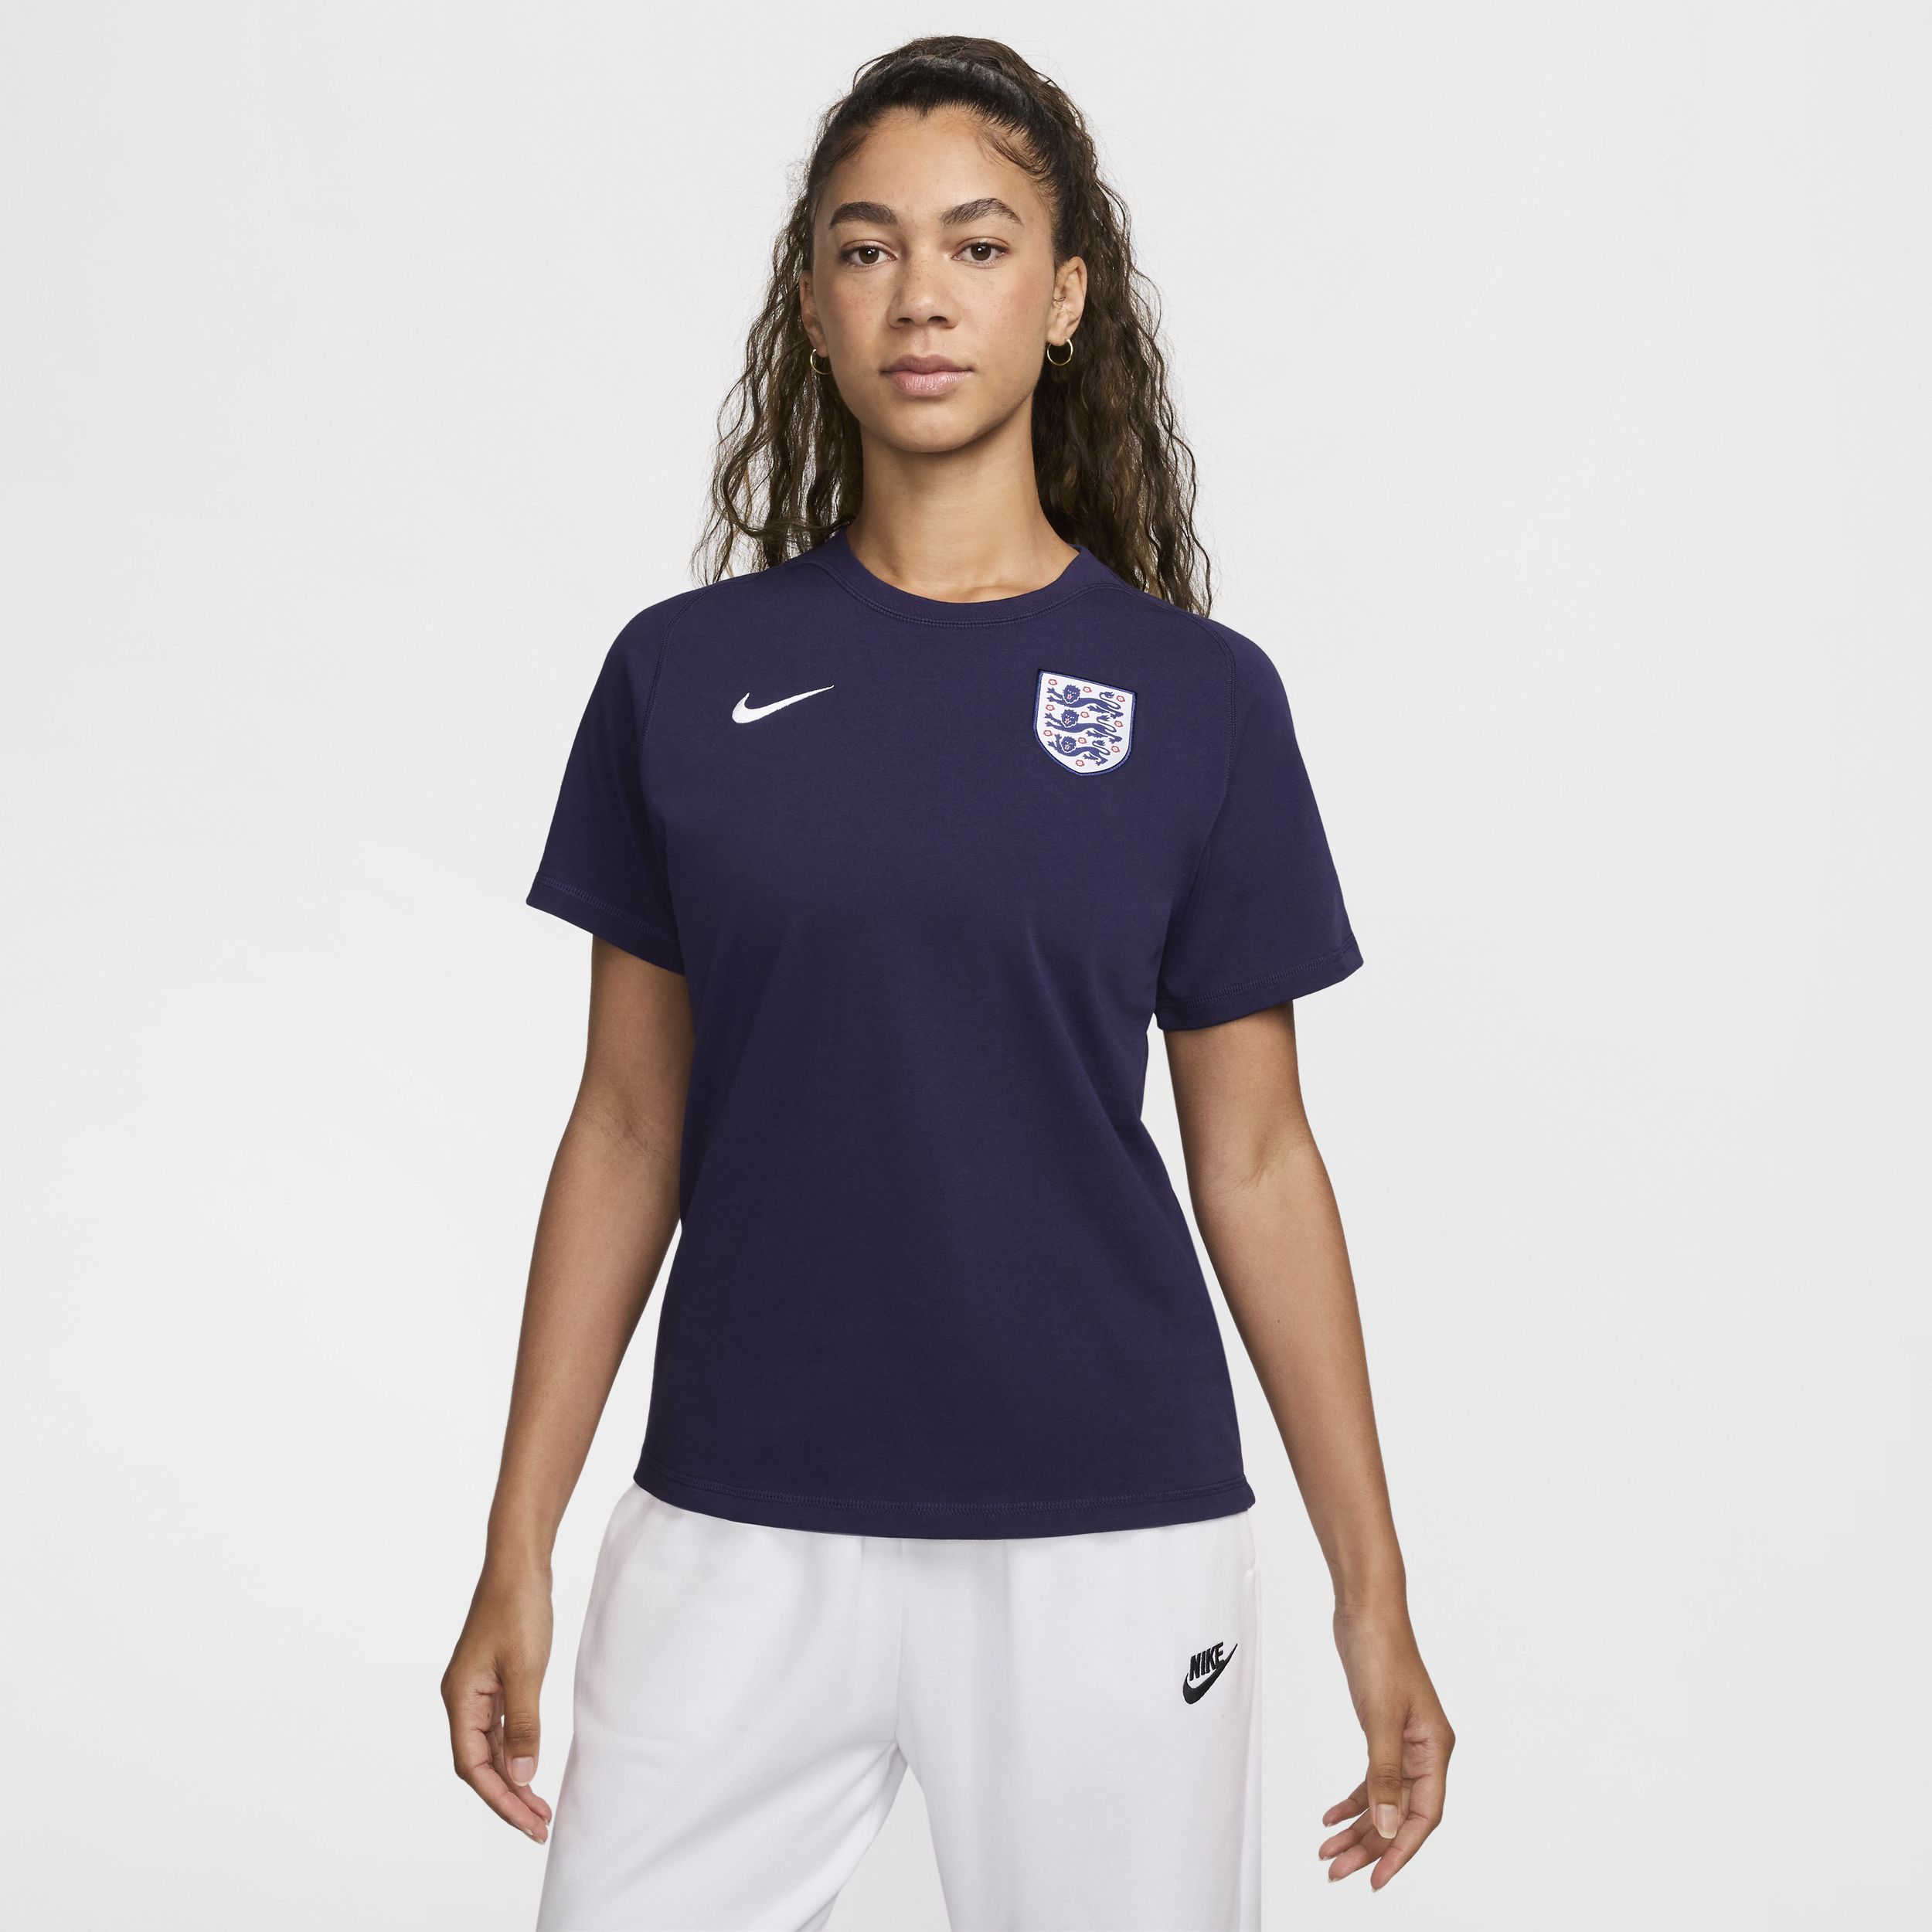 Engeland Travel Nike voetbaltop met korte mouwen - Paars